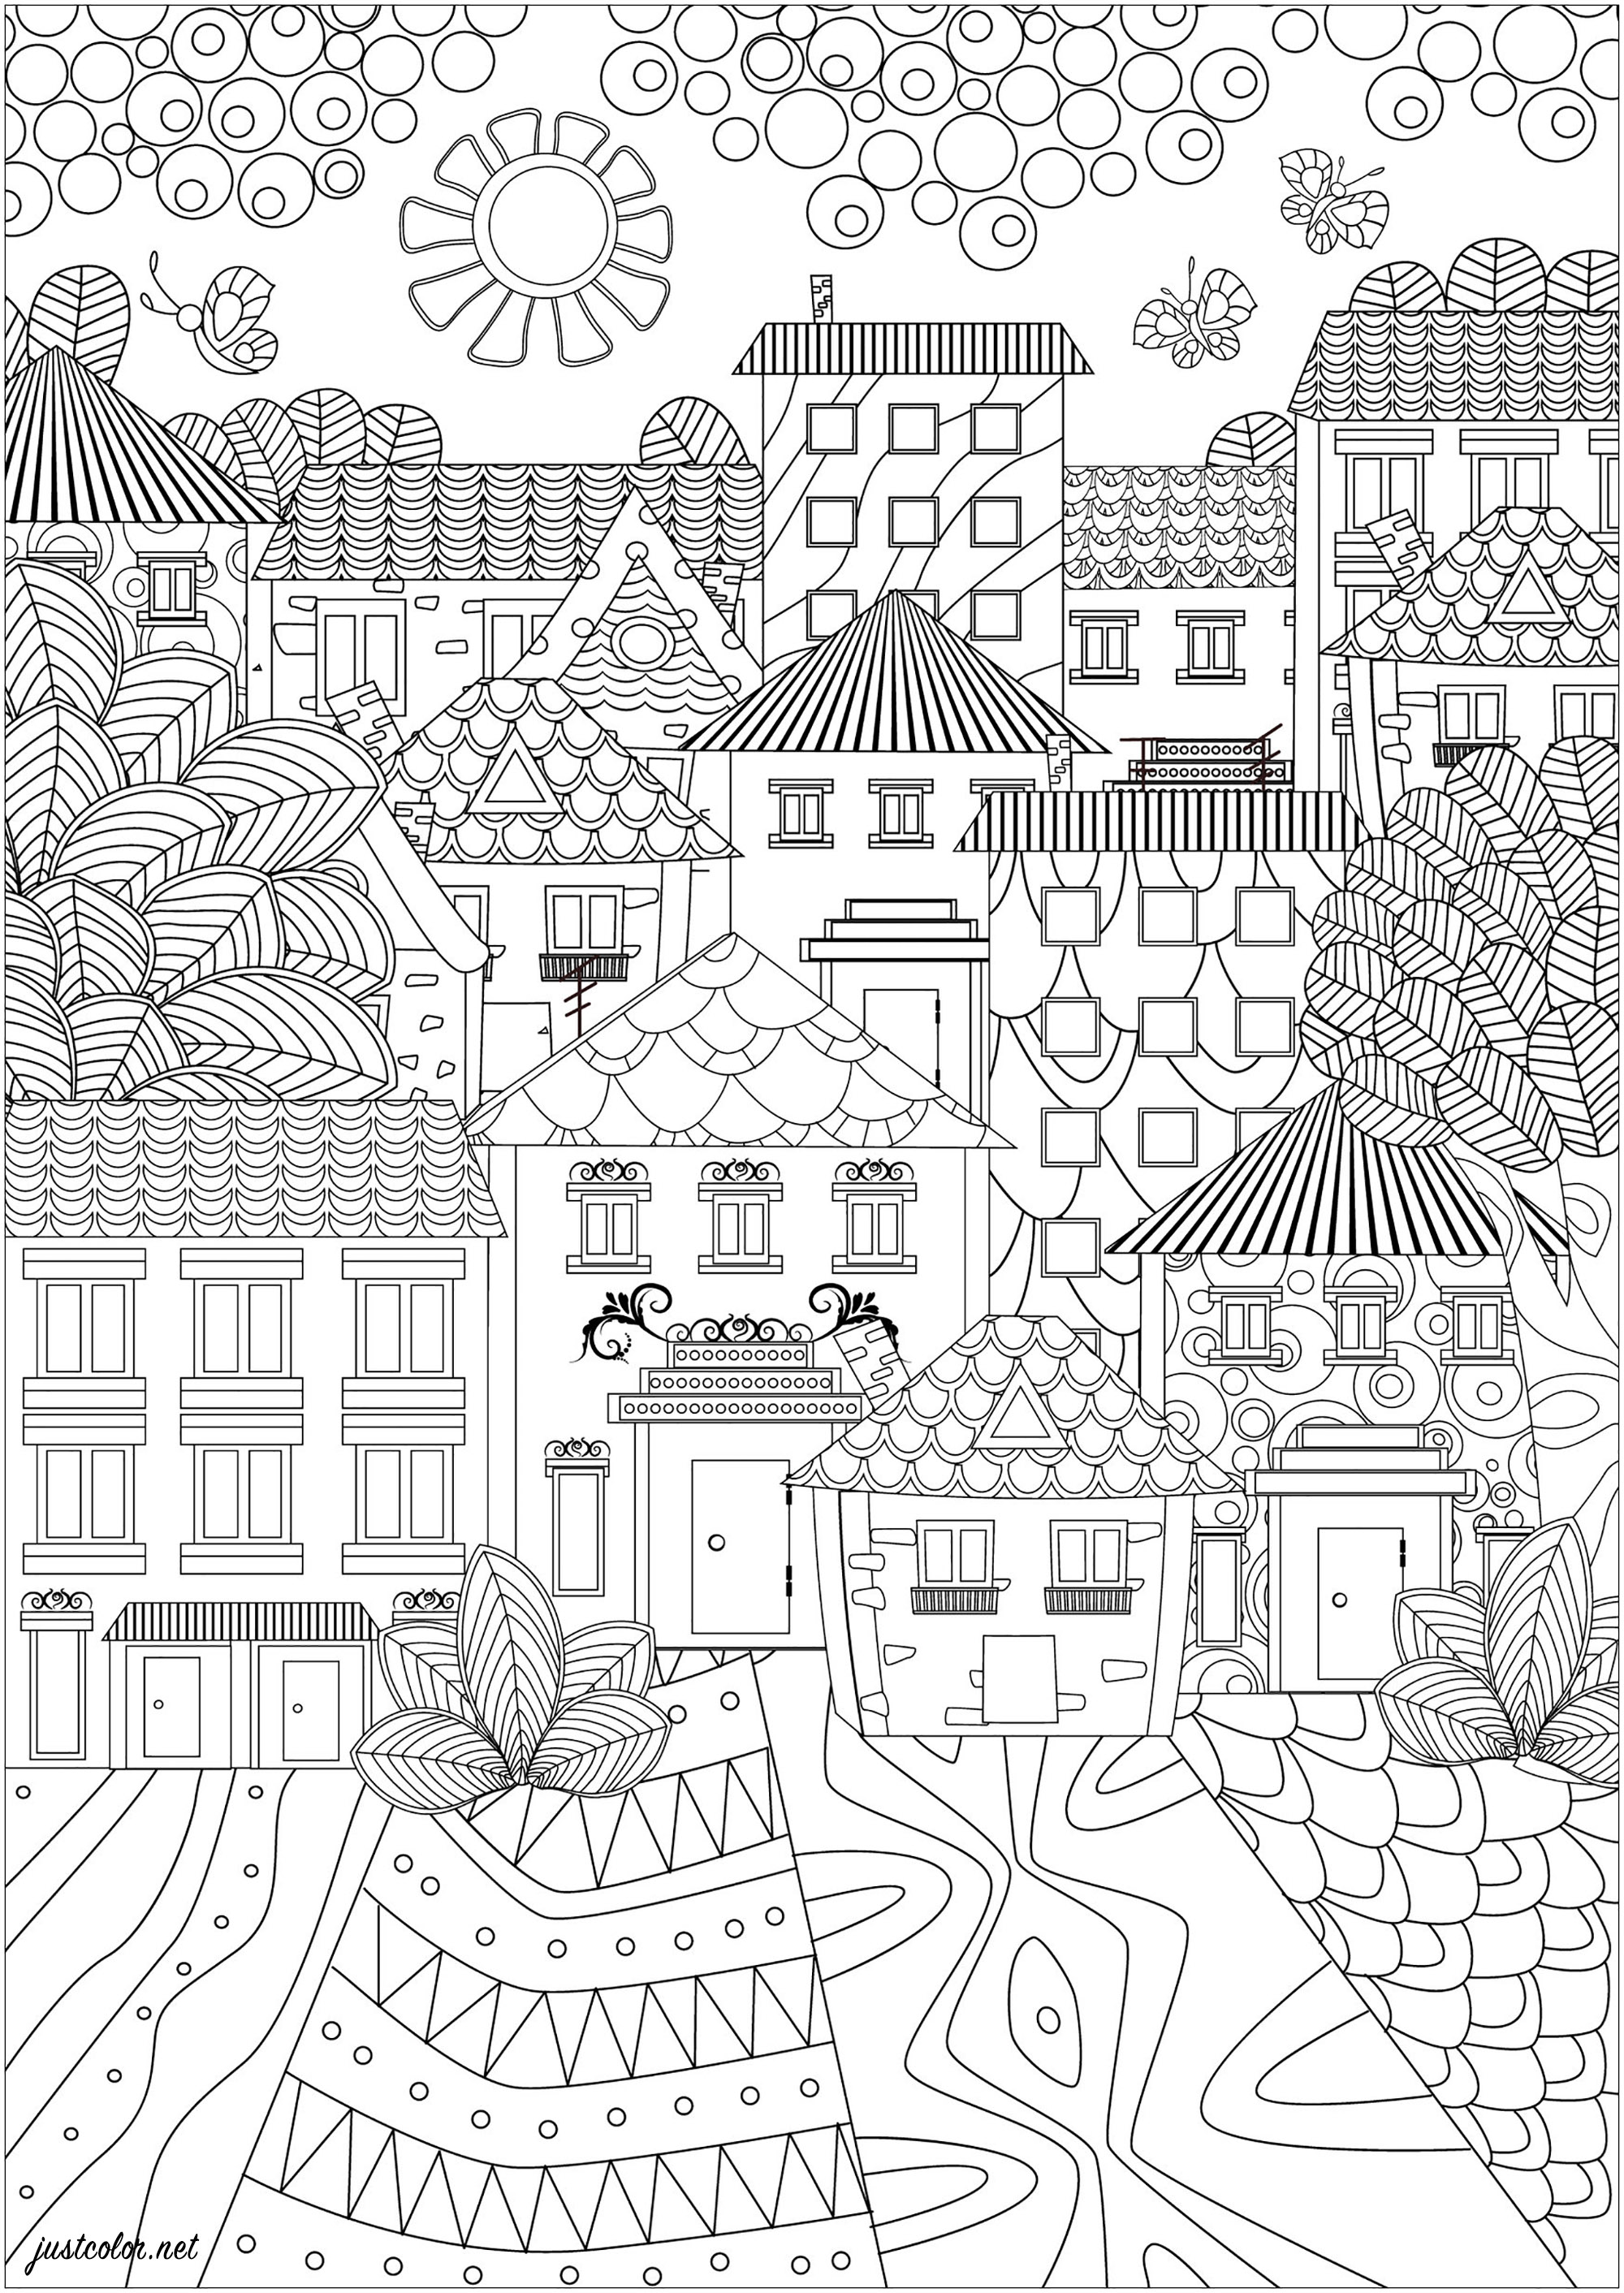 Una ciudad de hermosas casas con diseños sencillos y elegantes. Esta página para colorear es un paisaje urbano muy sencillo y elegante. Muestra una ciudad formada por bonitas casas con diseños sencillos y elegantes. Los tejados son puntiagudos y las ventanas pequeñas y bien decoradas. Las calles están pavimentadas con dibujos que serán muy agradables de colorear, Origen : 123rf   Artista : Ksym